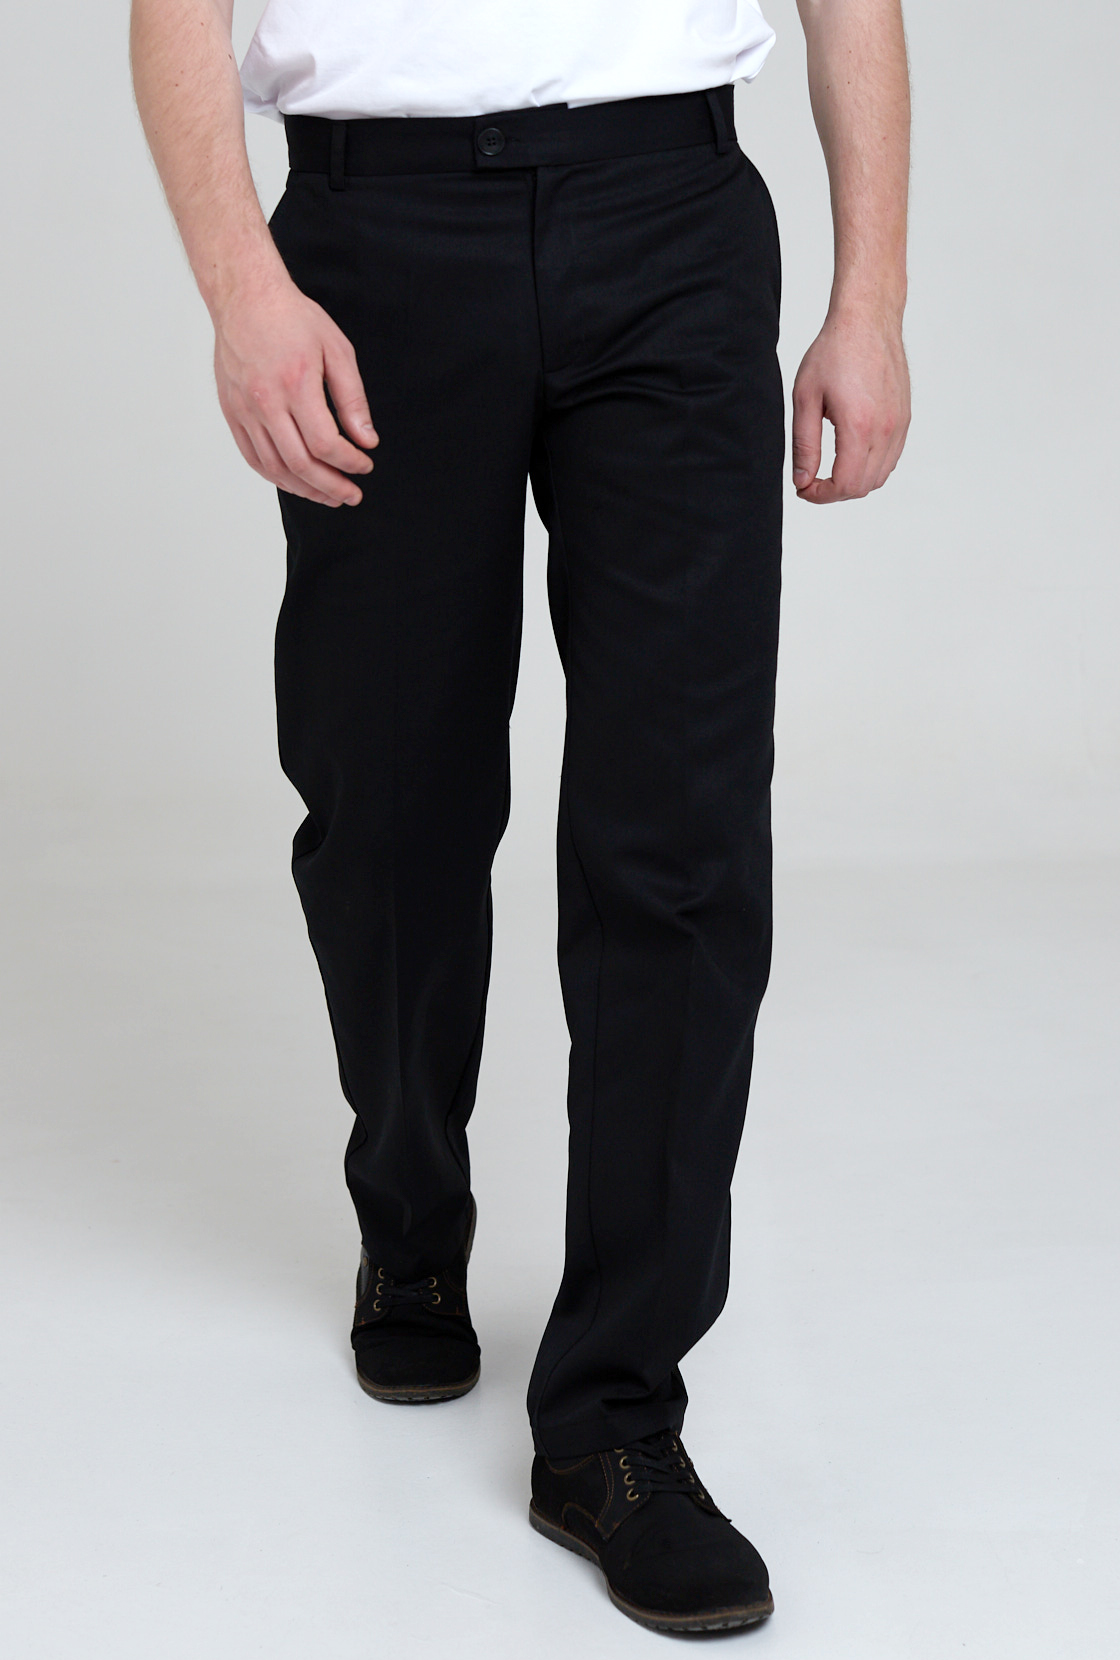 Брюки рабочие мужские IRINA EGOROVA classic trousers черные 52 RU